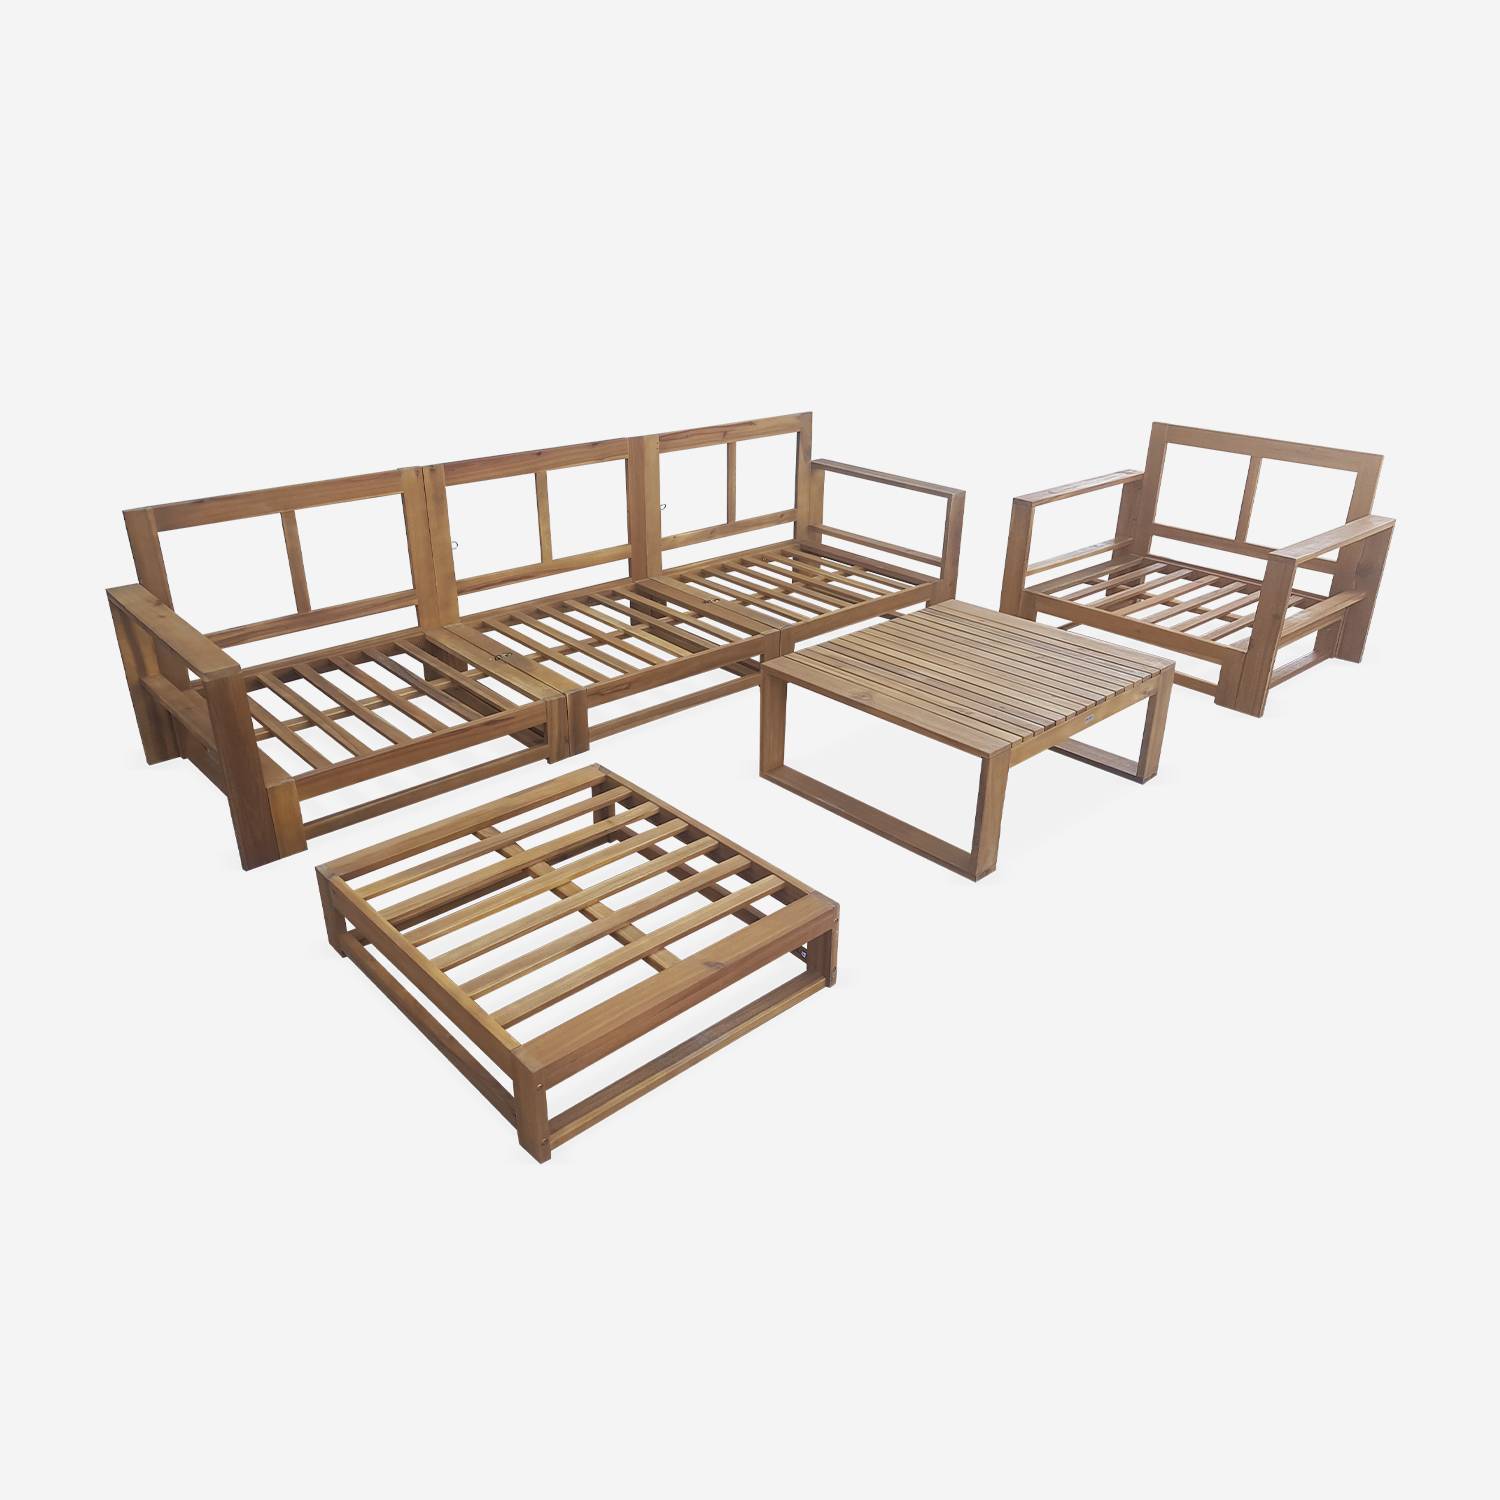 Gartenmöbel aus Holz mit 5 Sitzplätzen - Mendoza - graue Kissen, Sofa, Sessel und Couchtisch aus Akazie, 6 modulare Elemente, Design Photo8